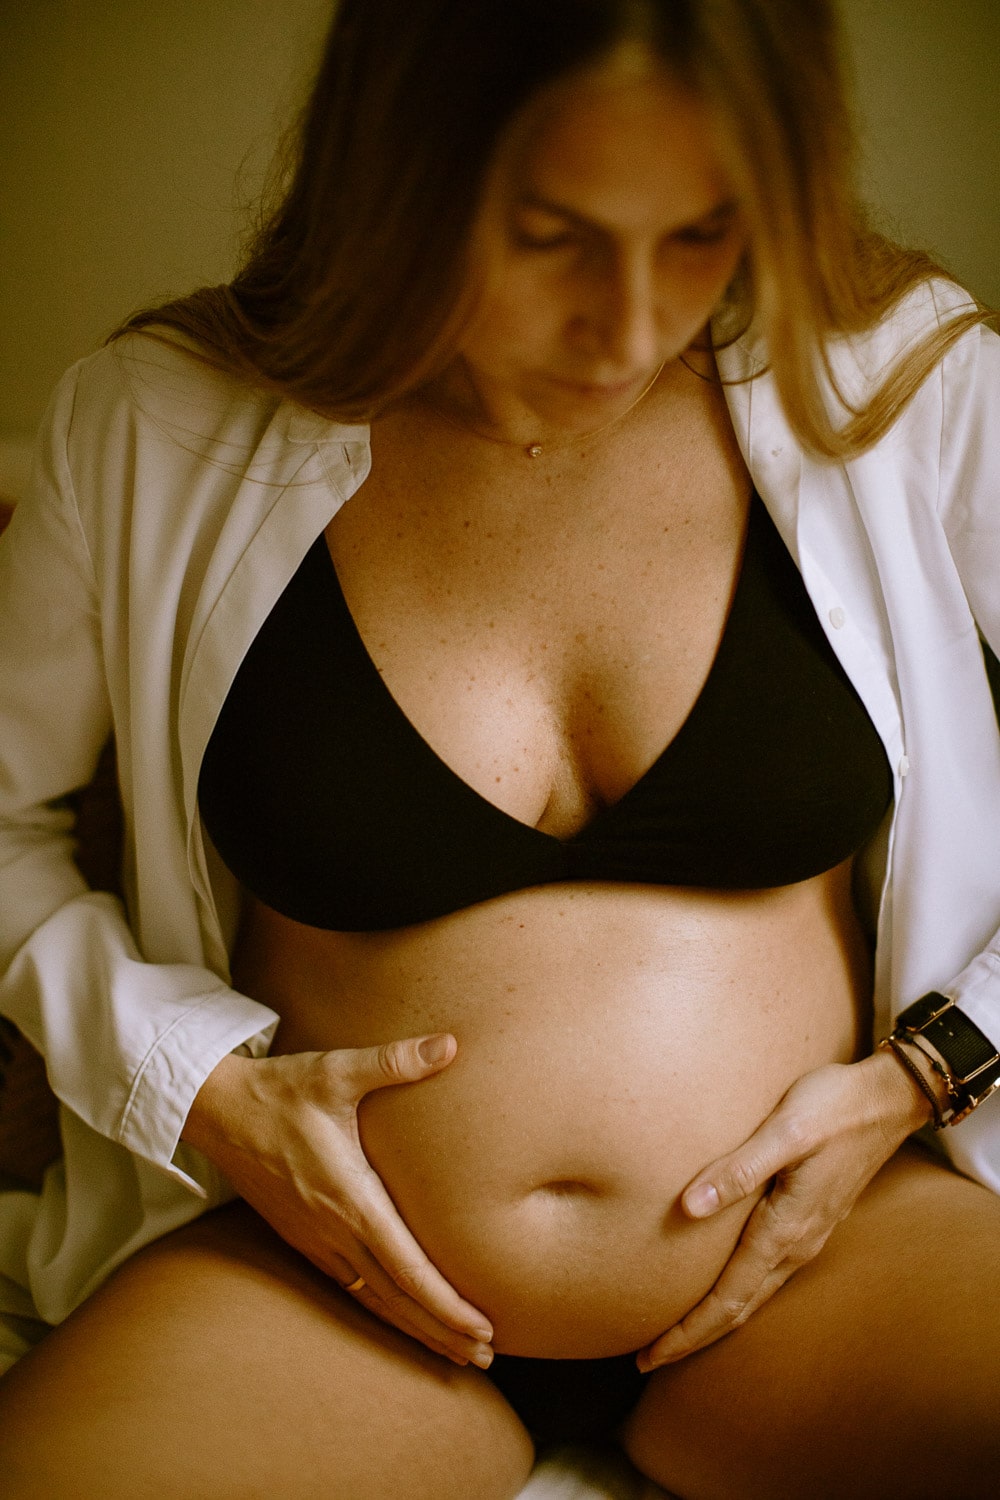 fotografias embarazada intimas